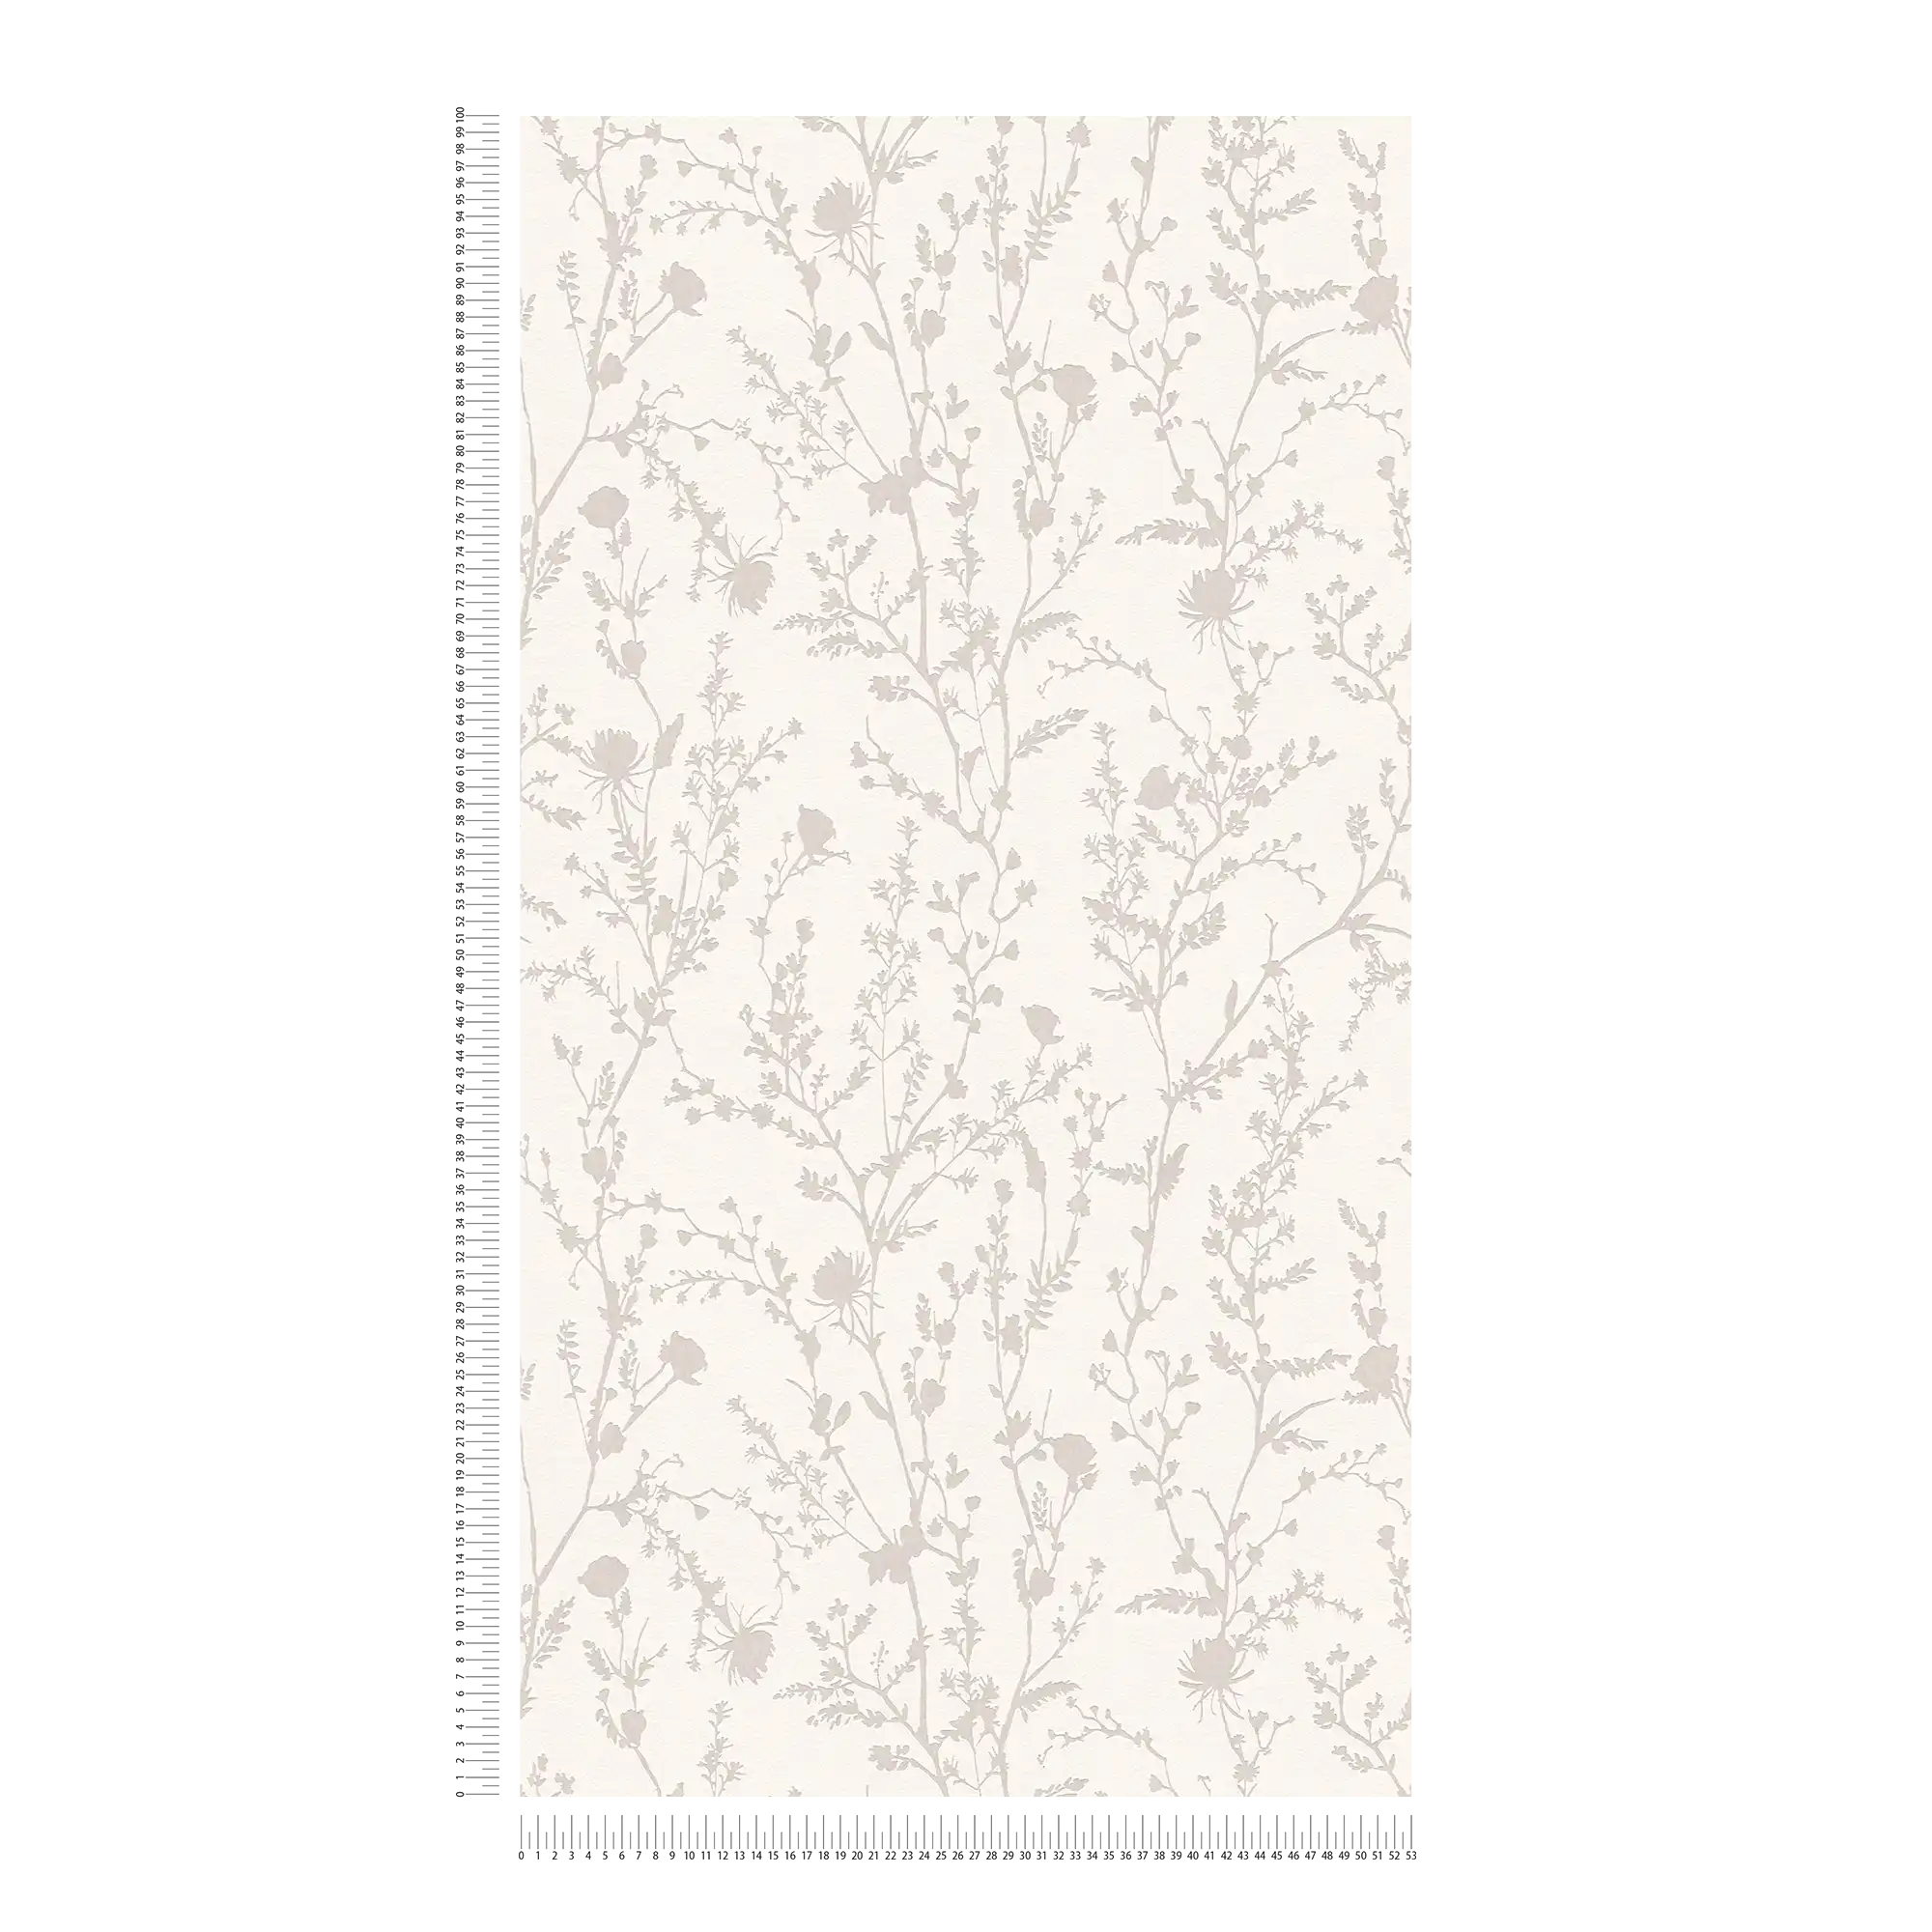             Carta da parati non tessuta con motivi floreali ed erbe morbide - bianco, grigio
        